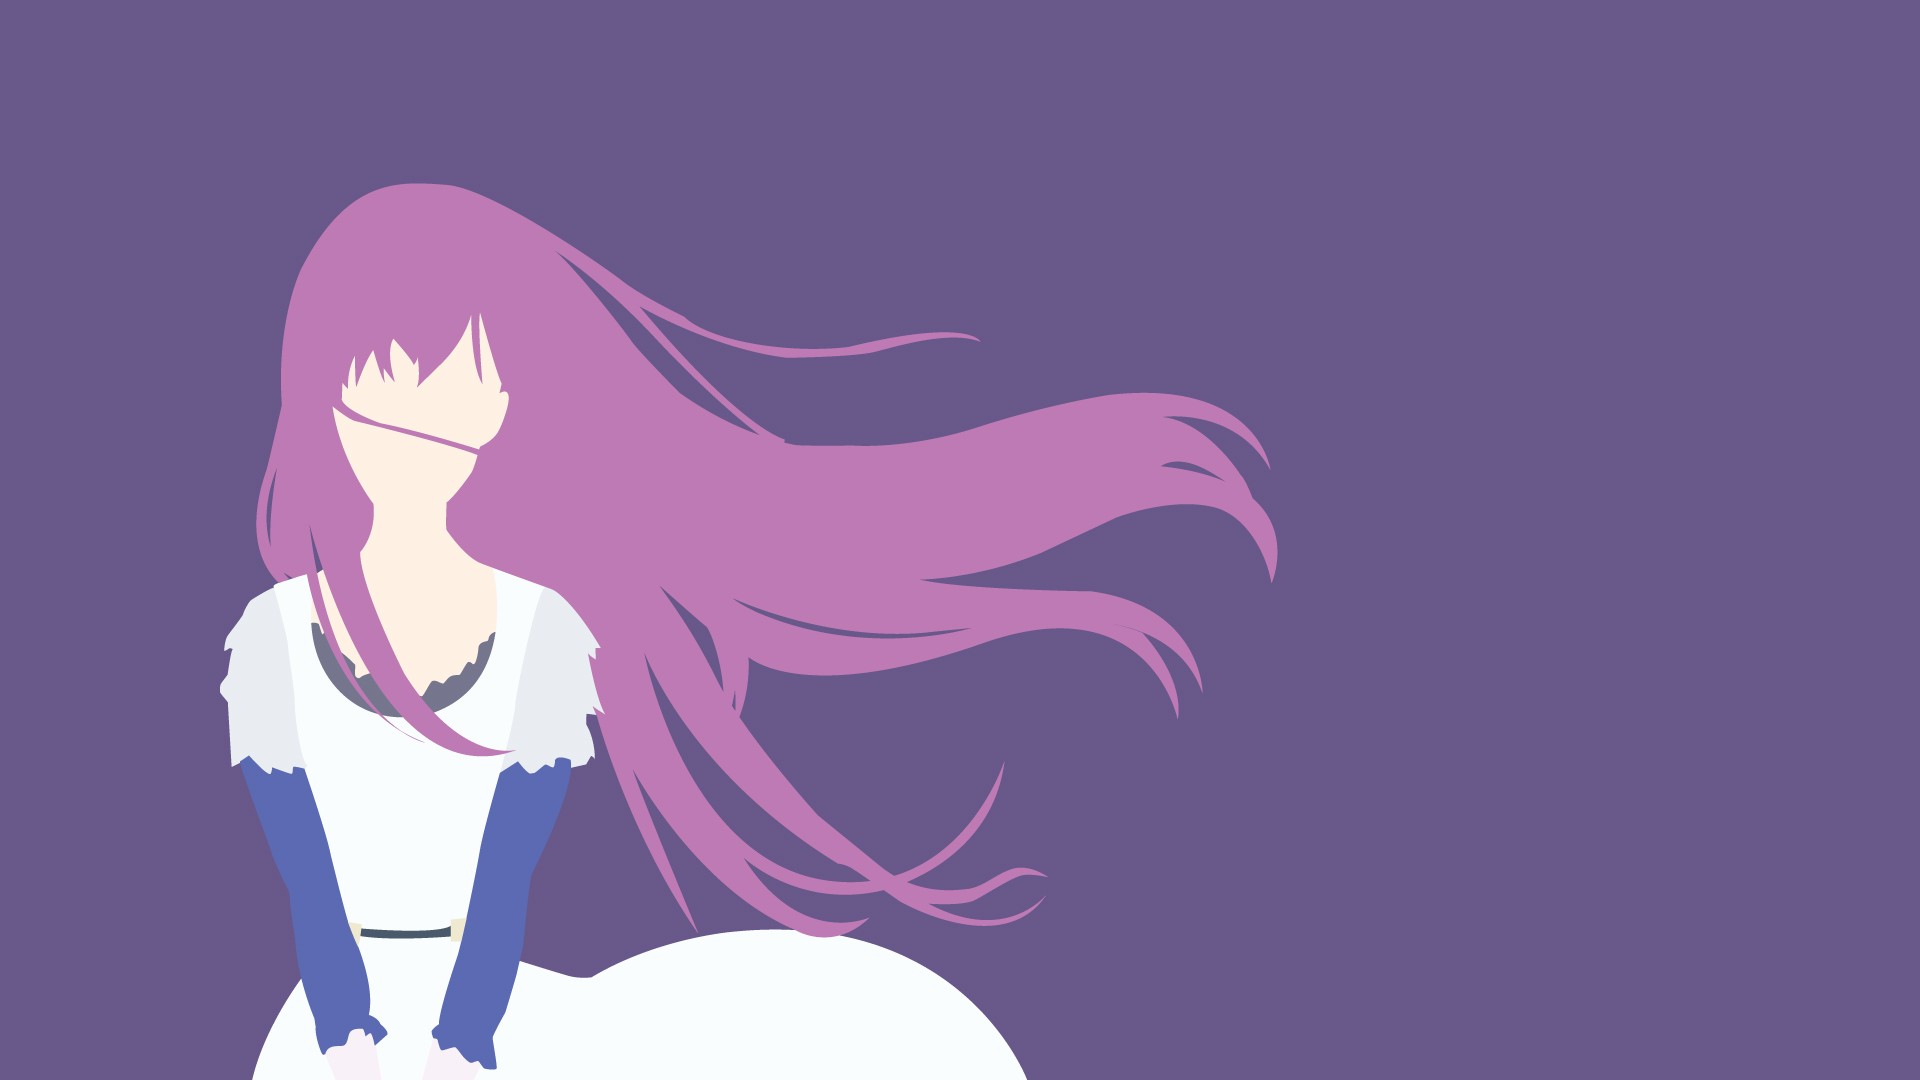 Unduh 8600 Koleksi Background Tumblr Anime Gratis Terbaik